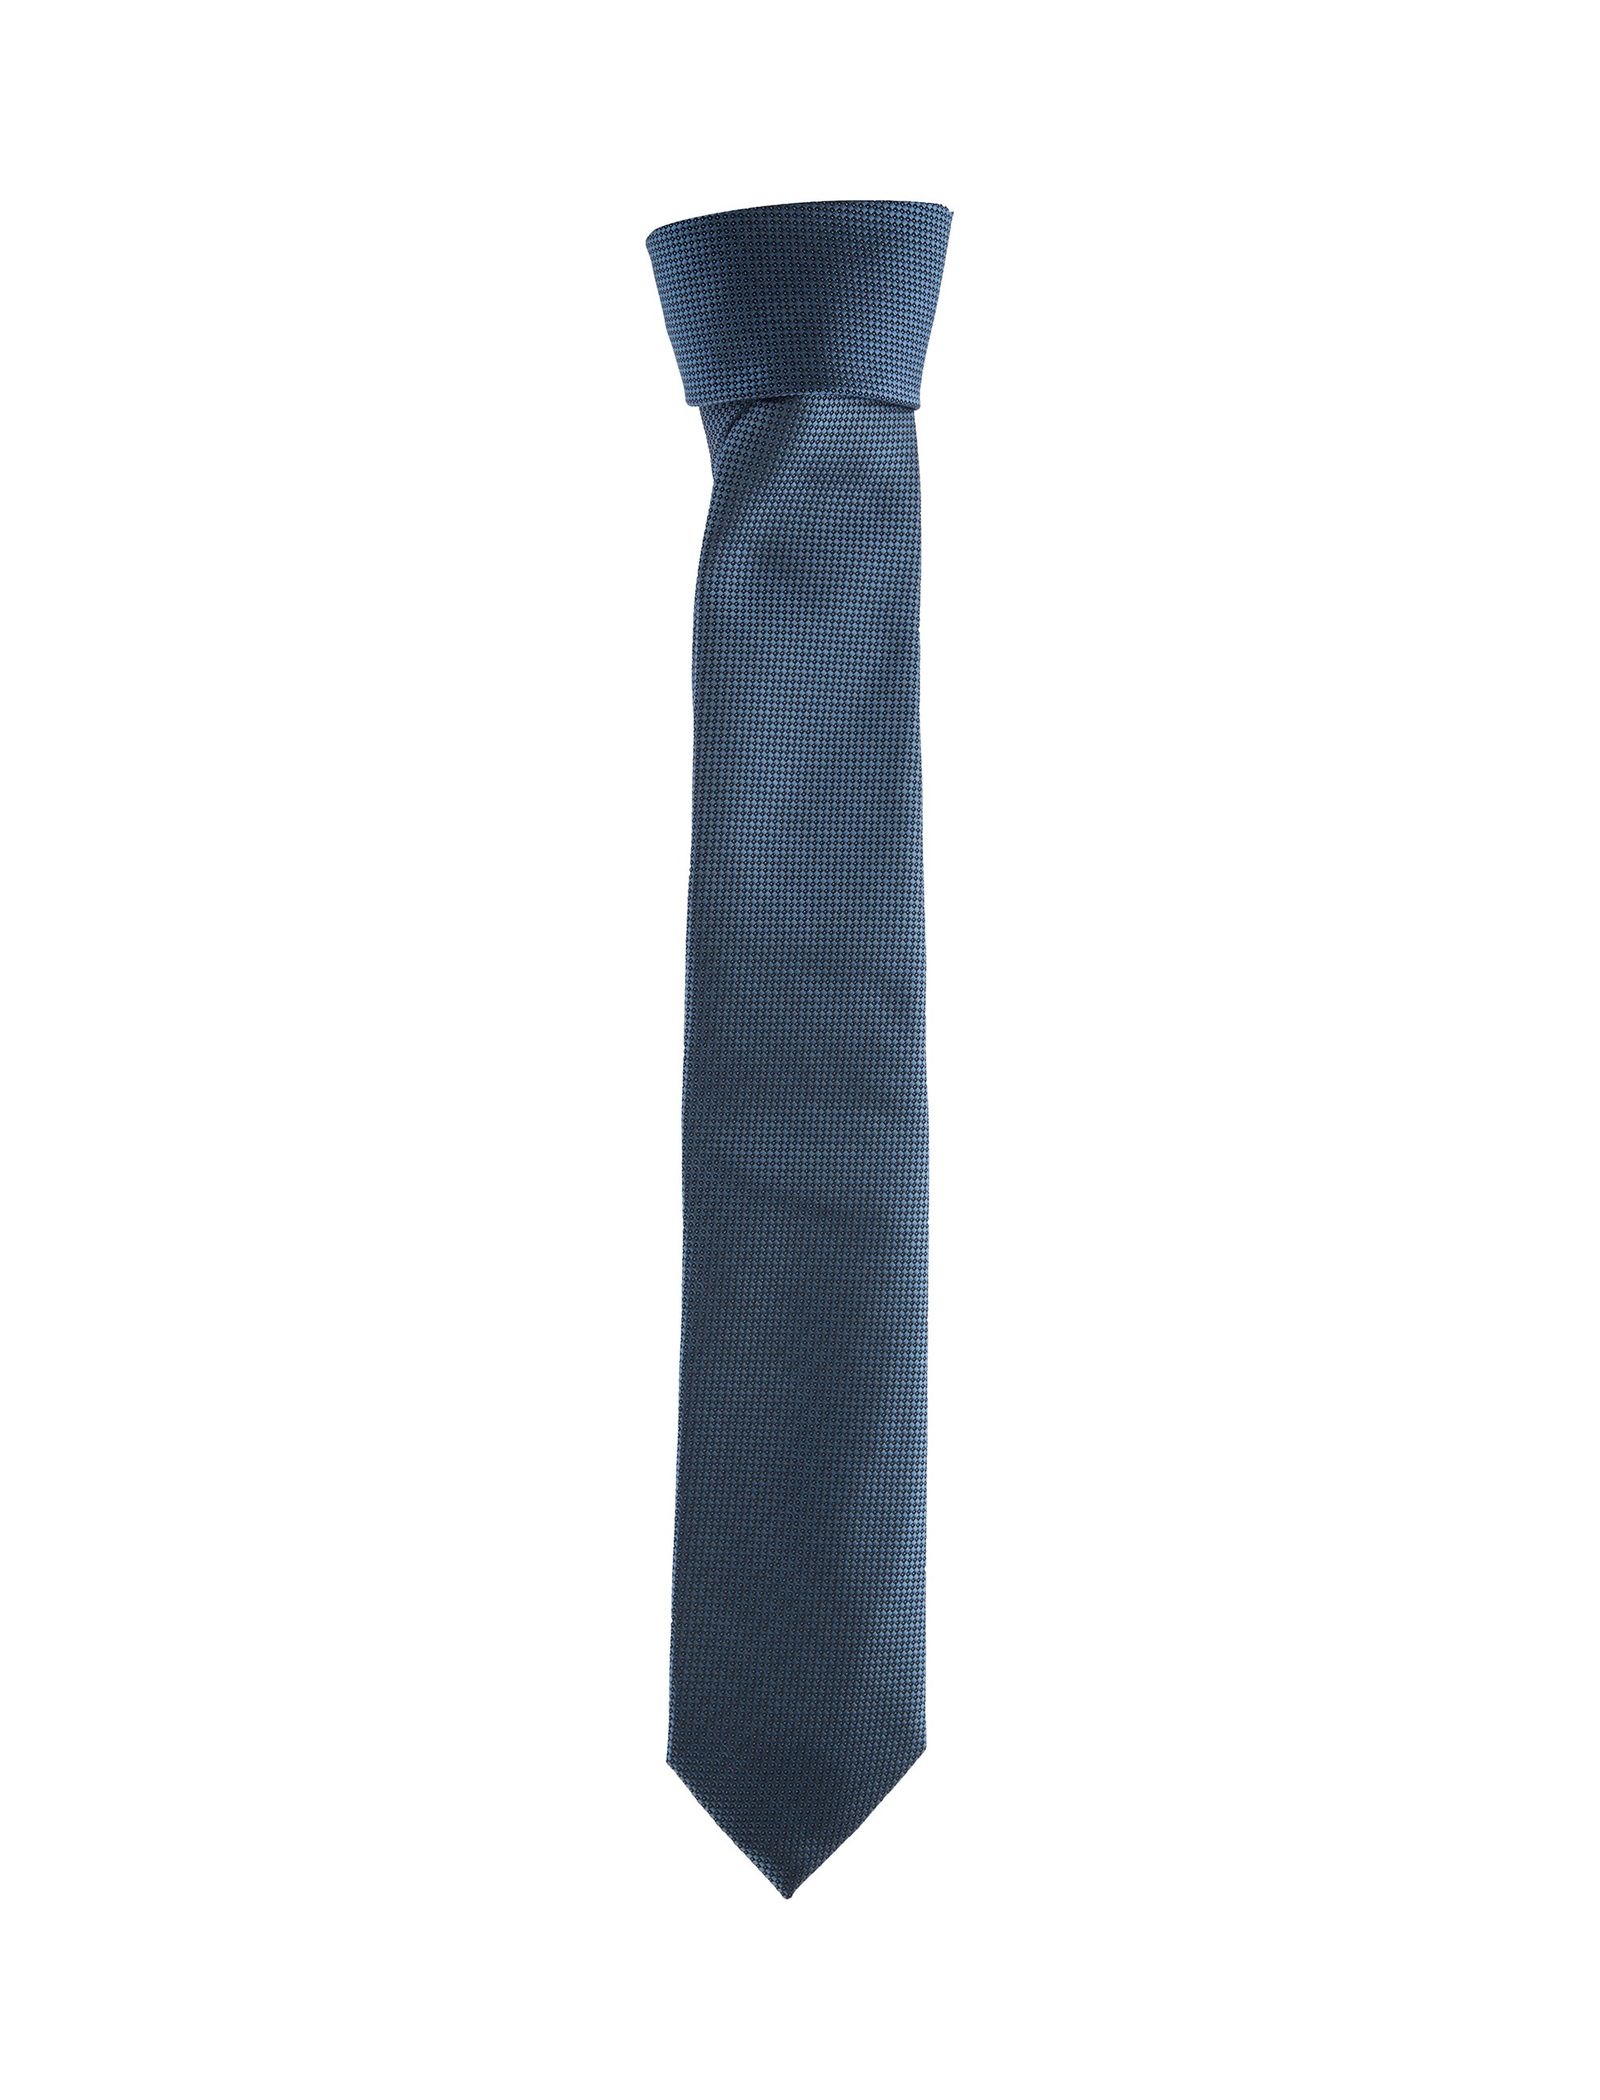 کراوات طرح دار مردانه - یوپیم - آبي - 2